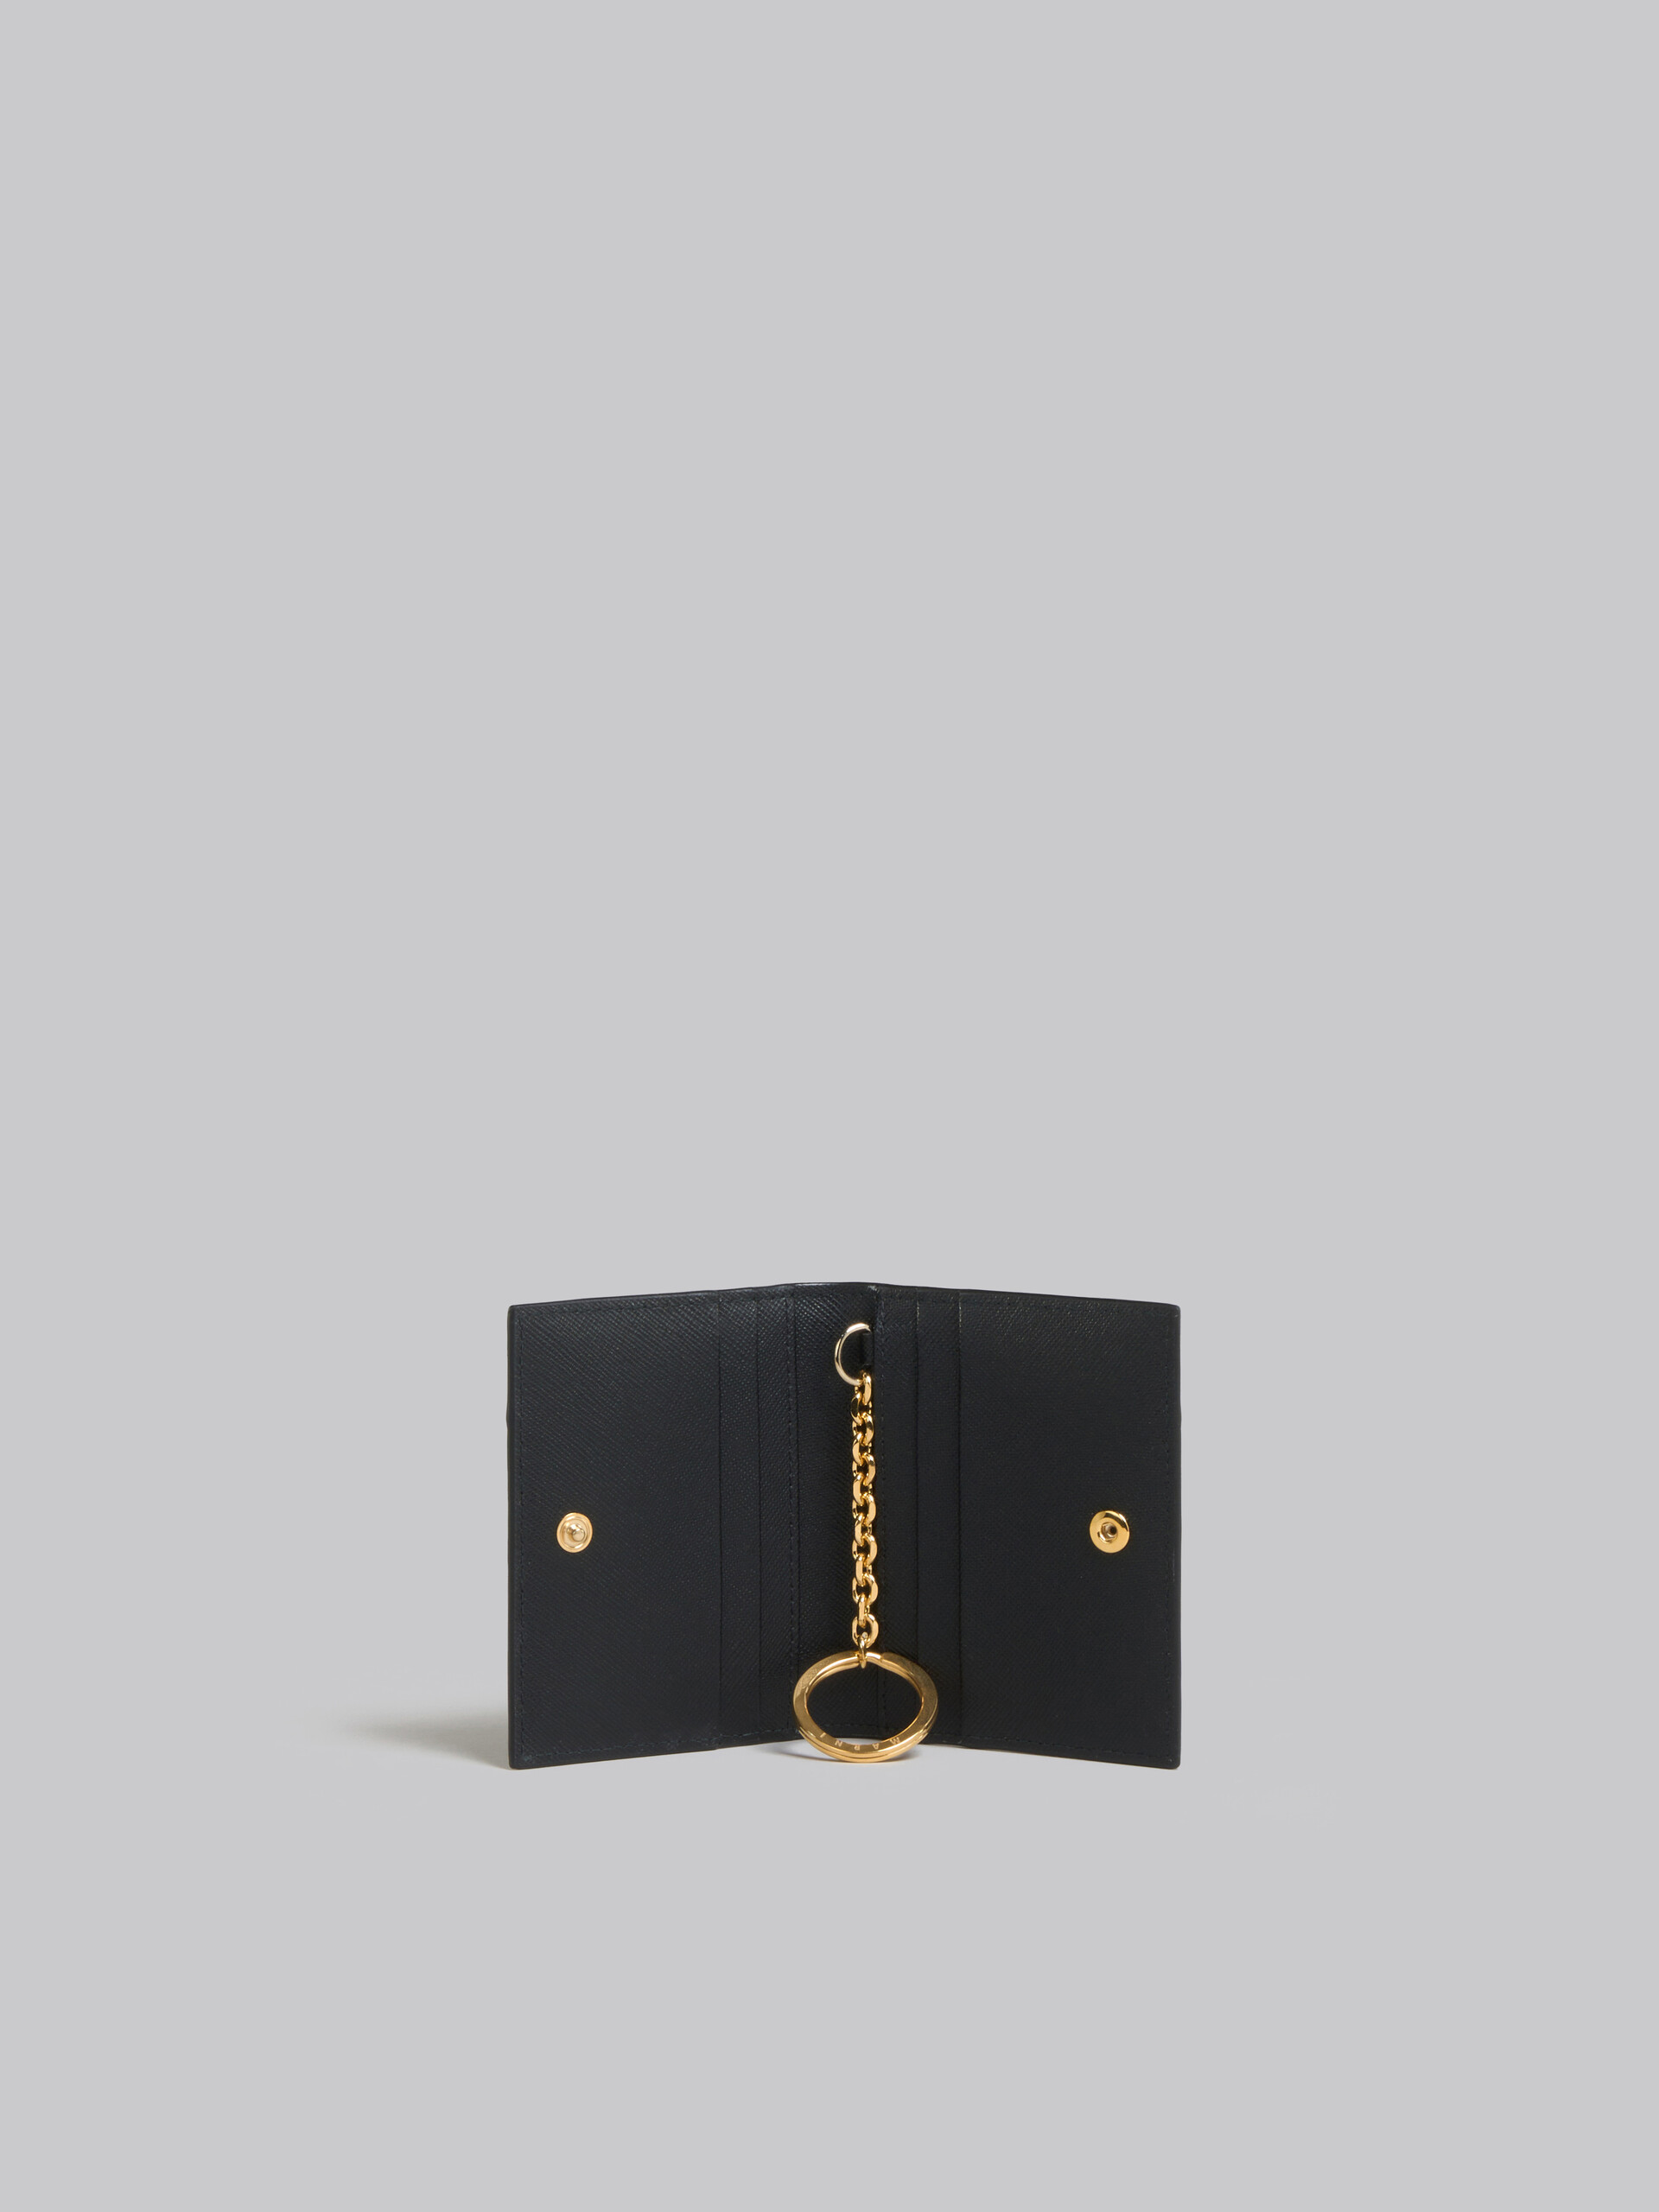 Schwarzer Kartenhalter aus Saffiano-Leder - Brieftaschen - Image 2